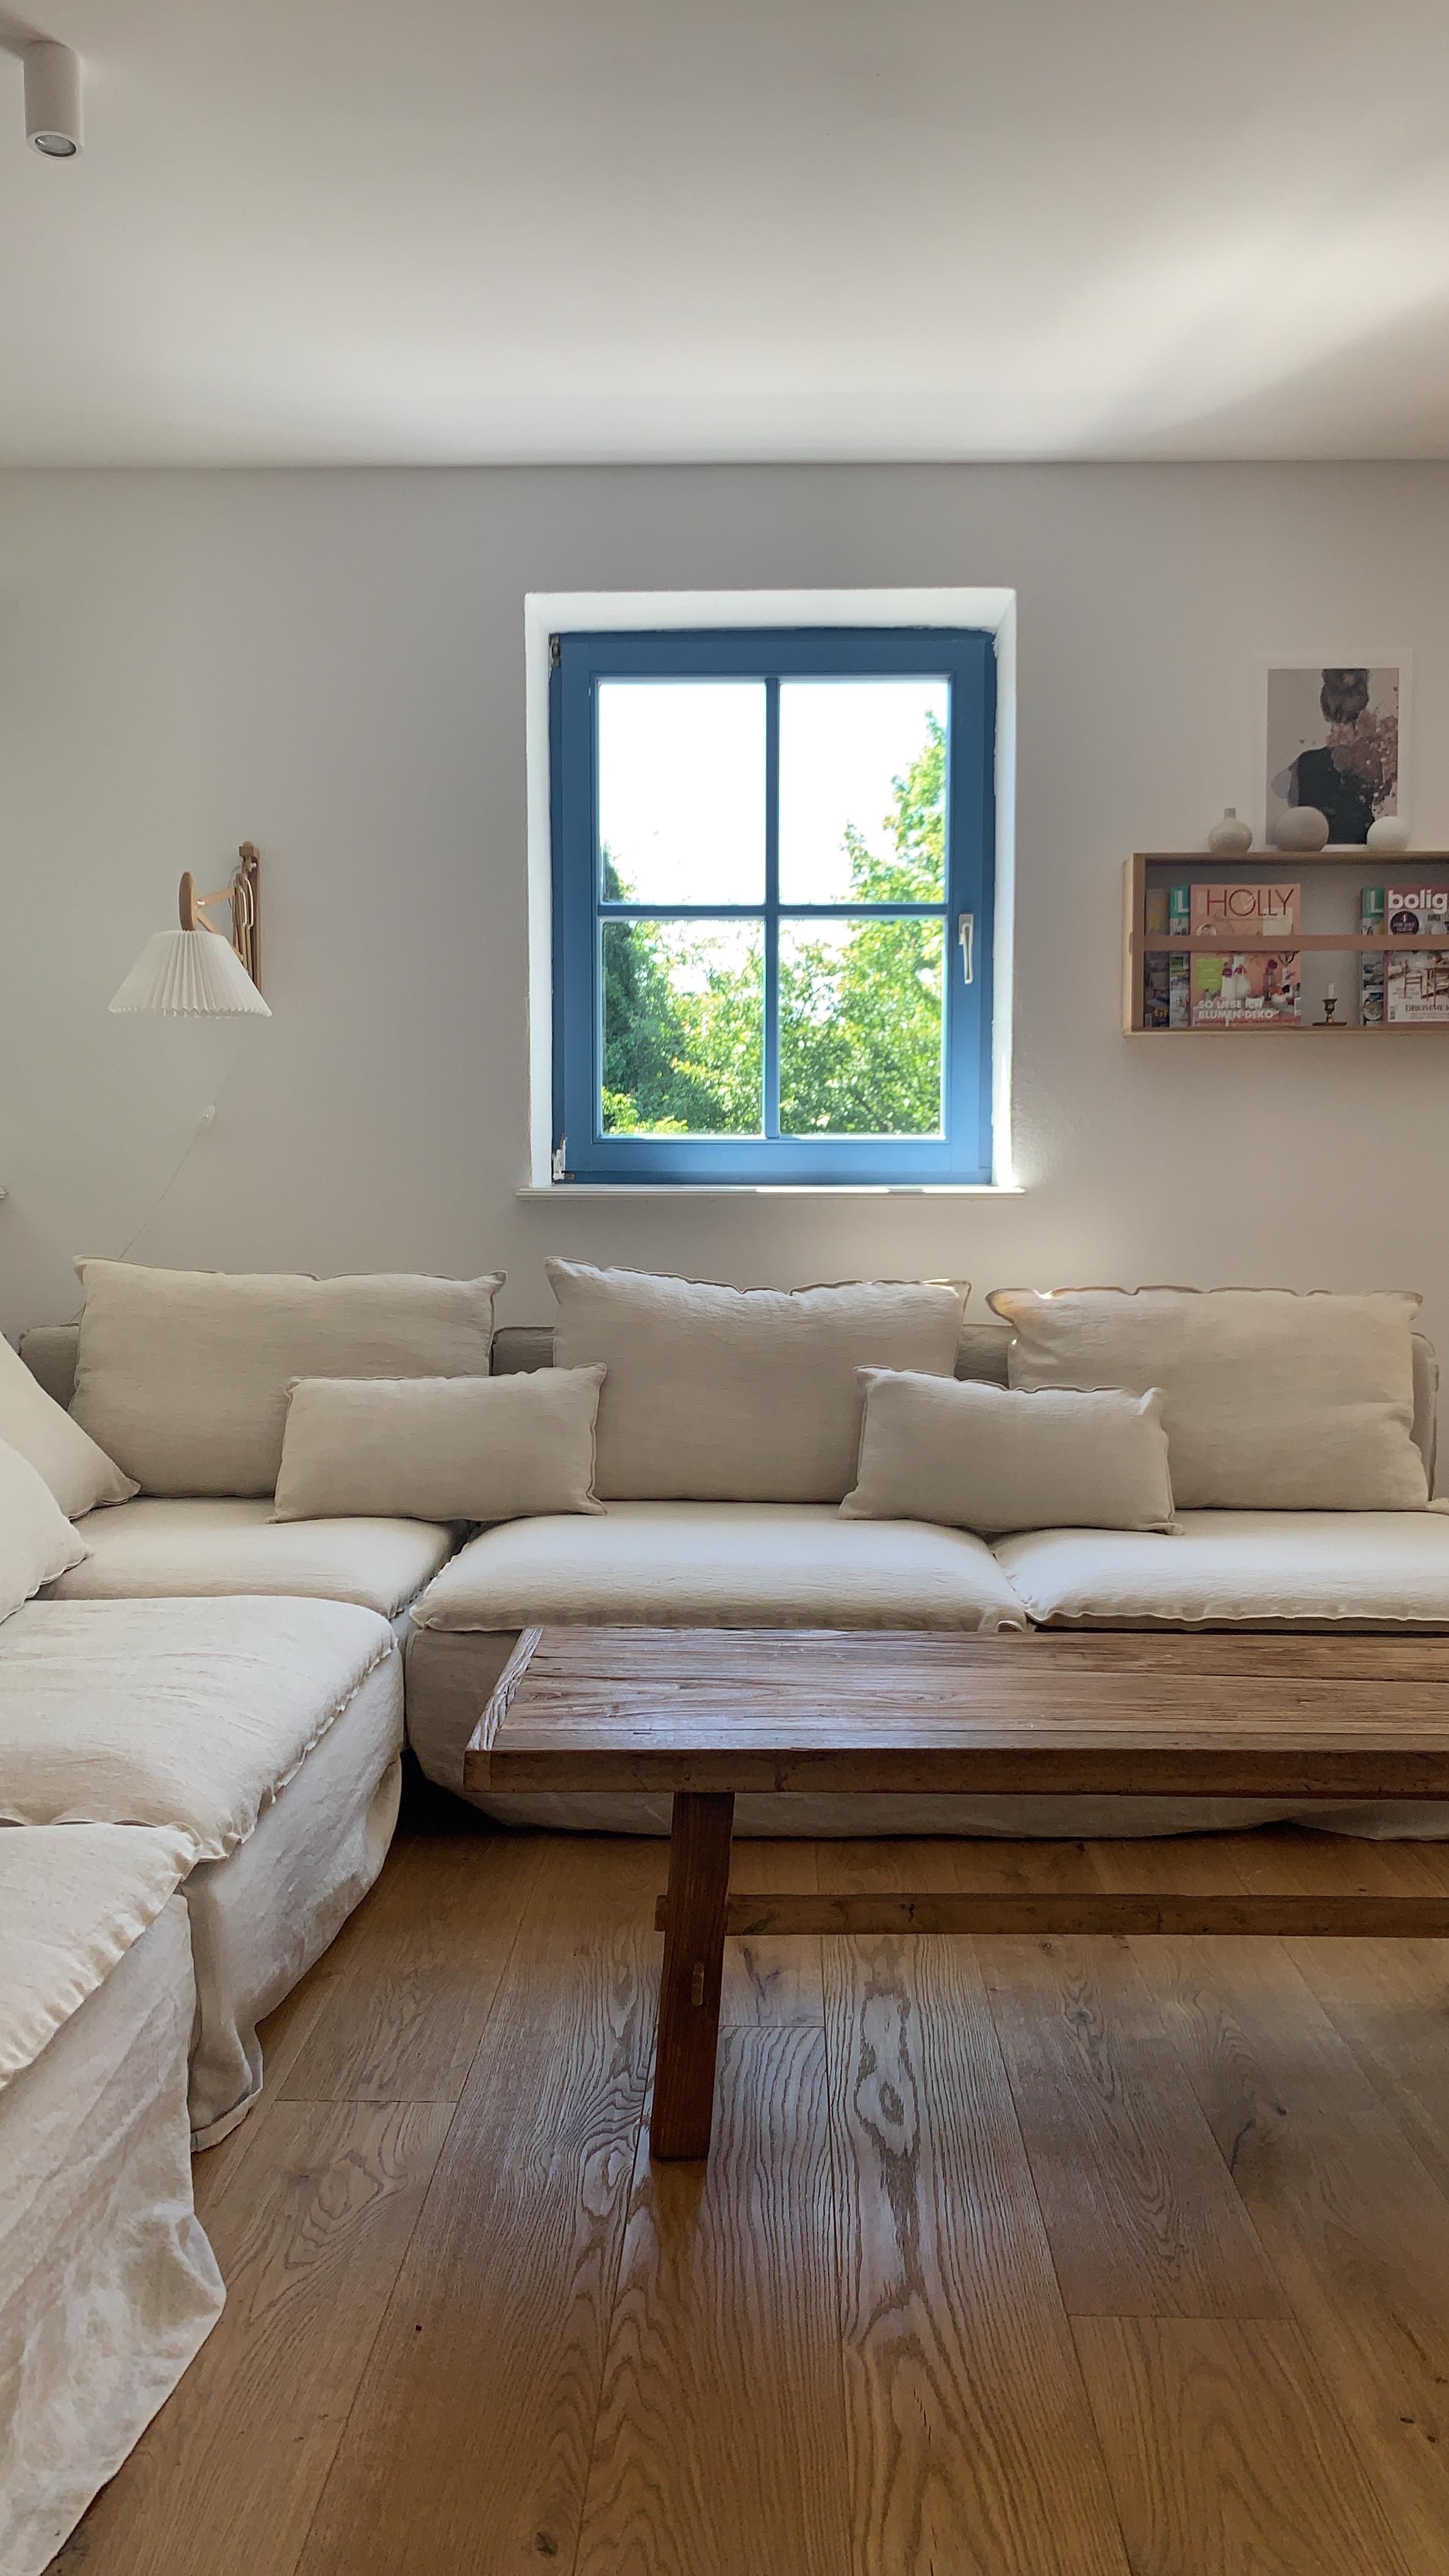 Endlich ist der neue Bezug drauf! 
#bemz #wohnzimmer #couch #söderhamn #leinen